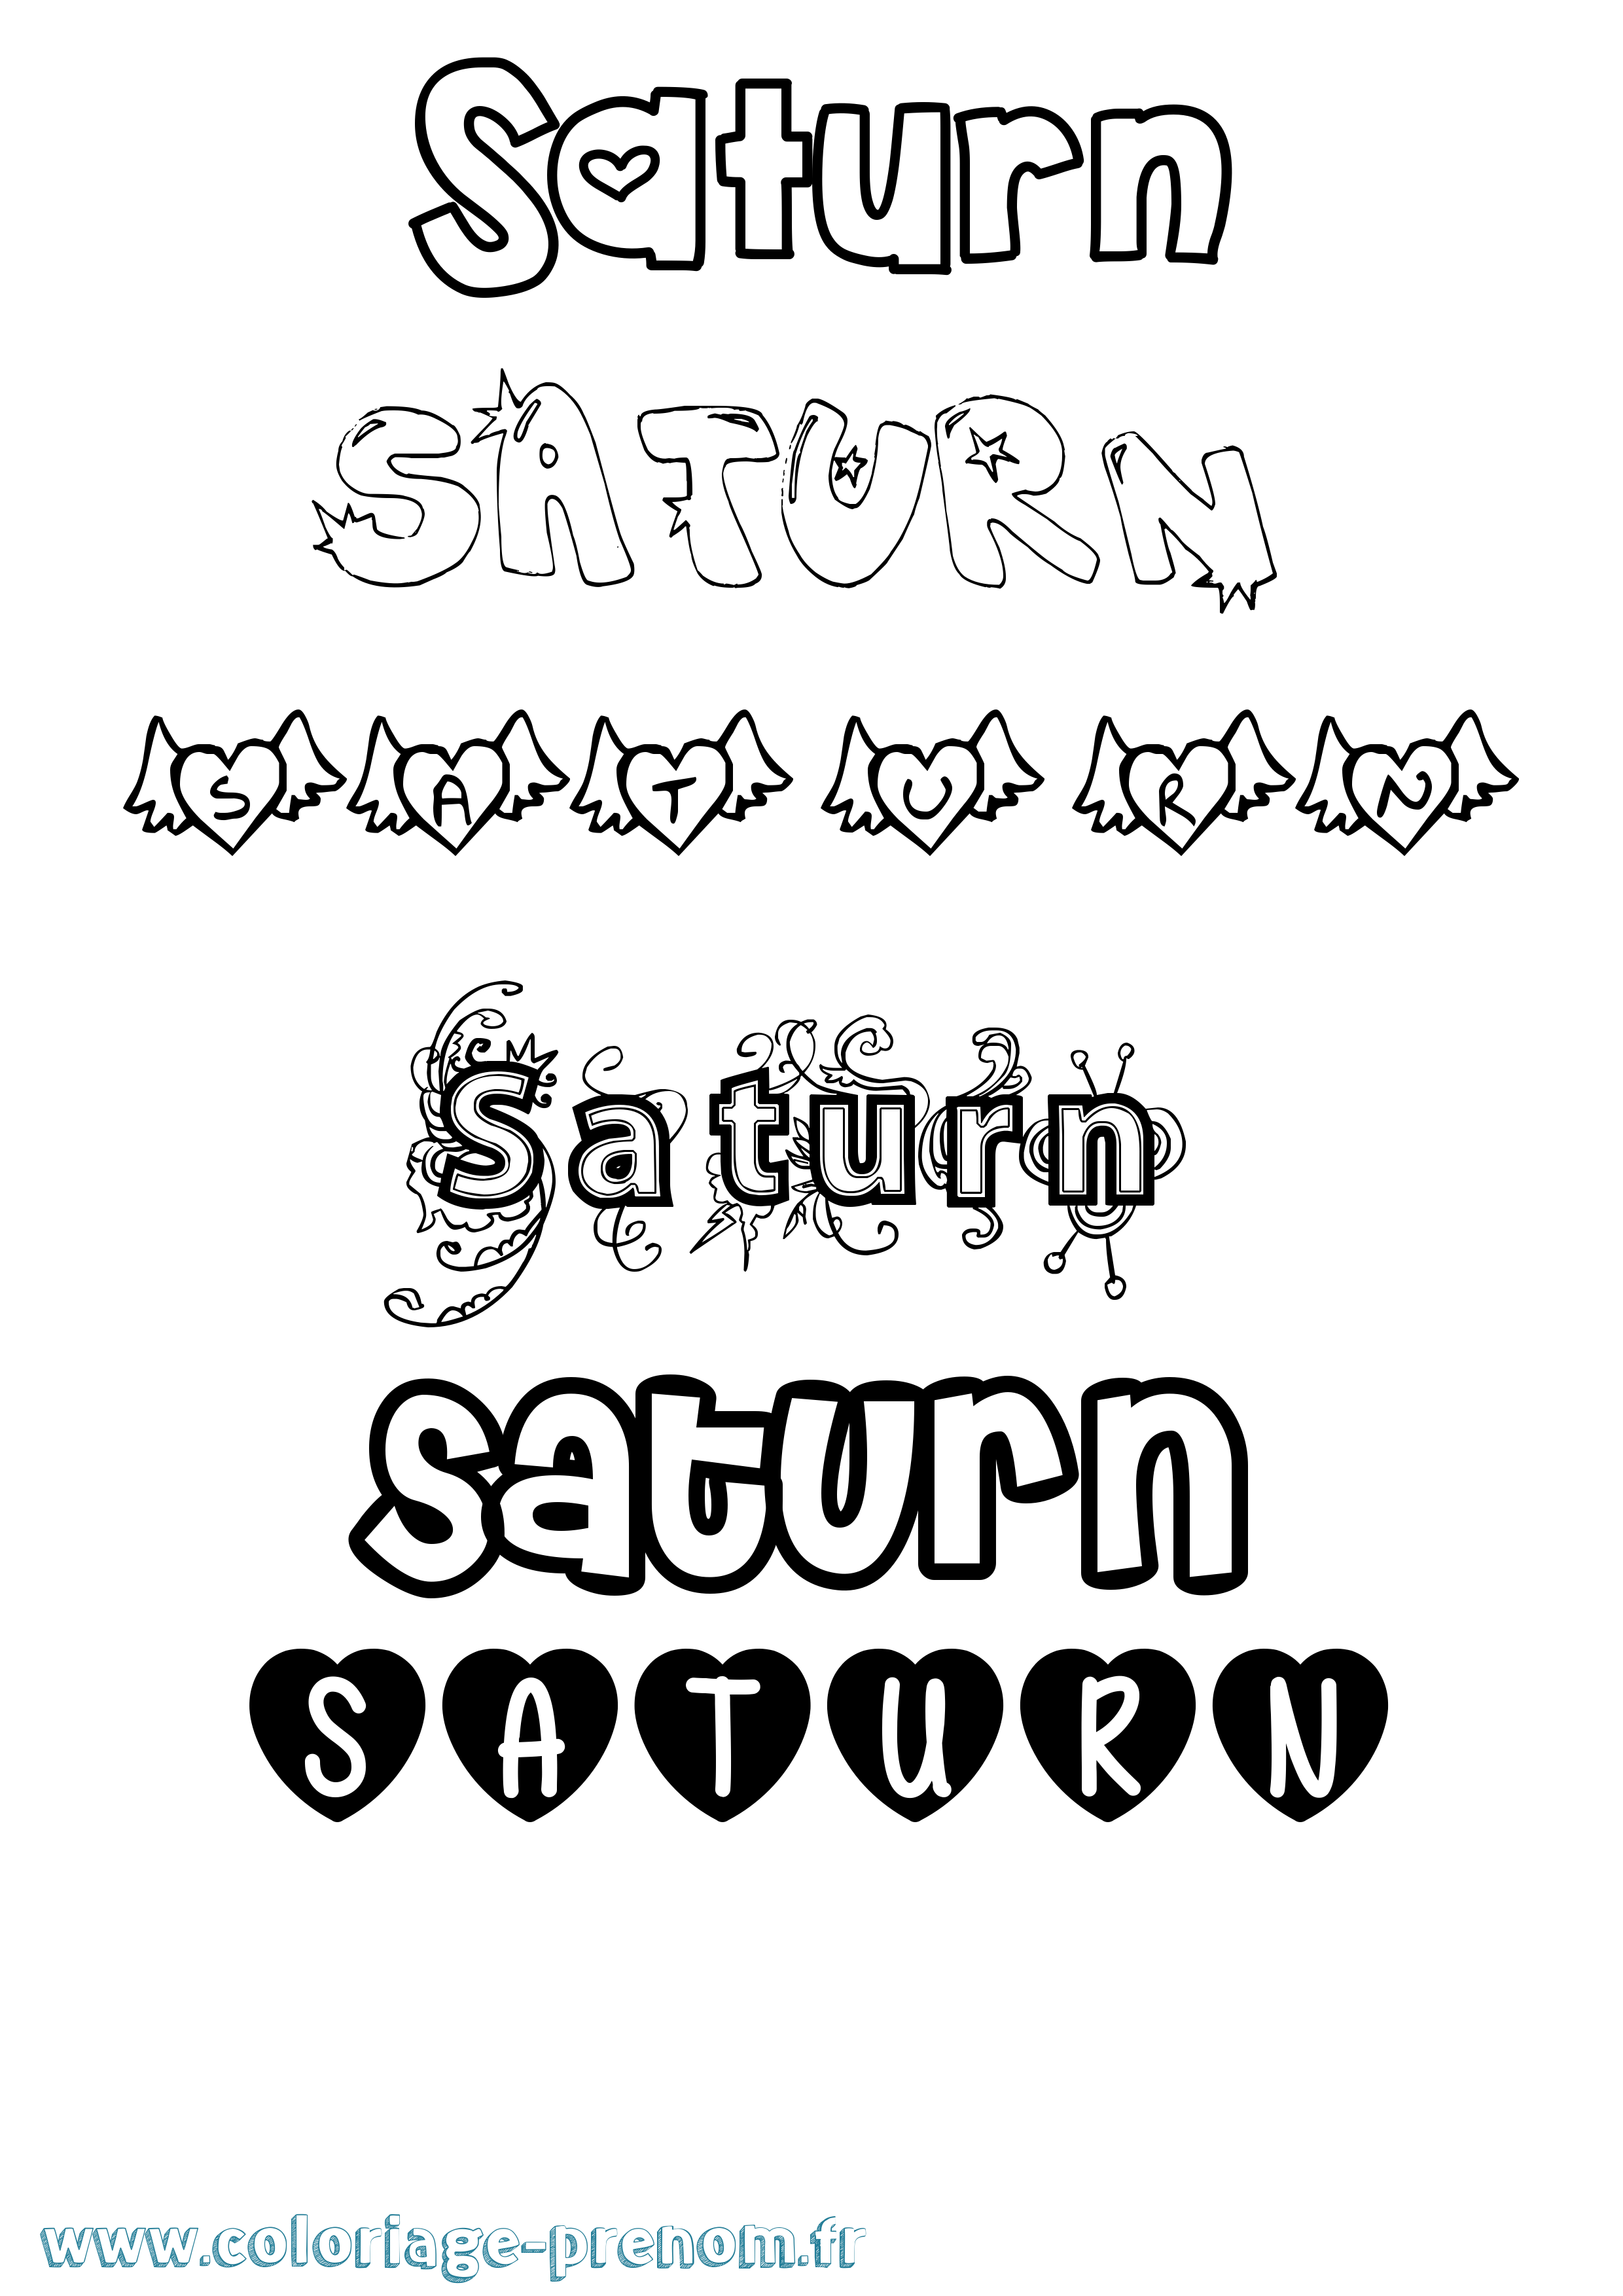 Coloriage prénom Saturn